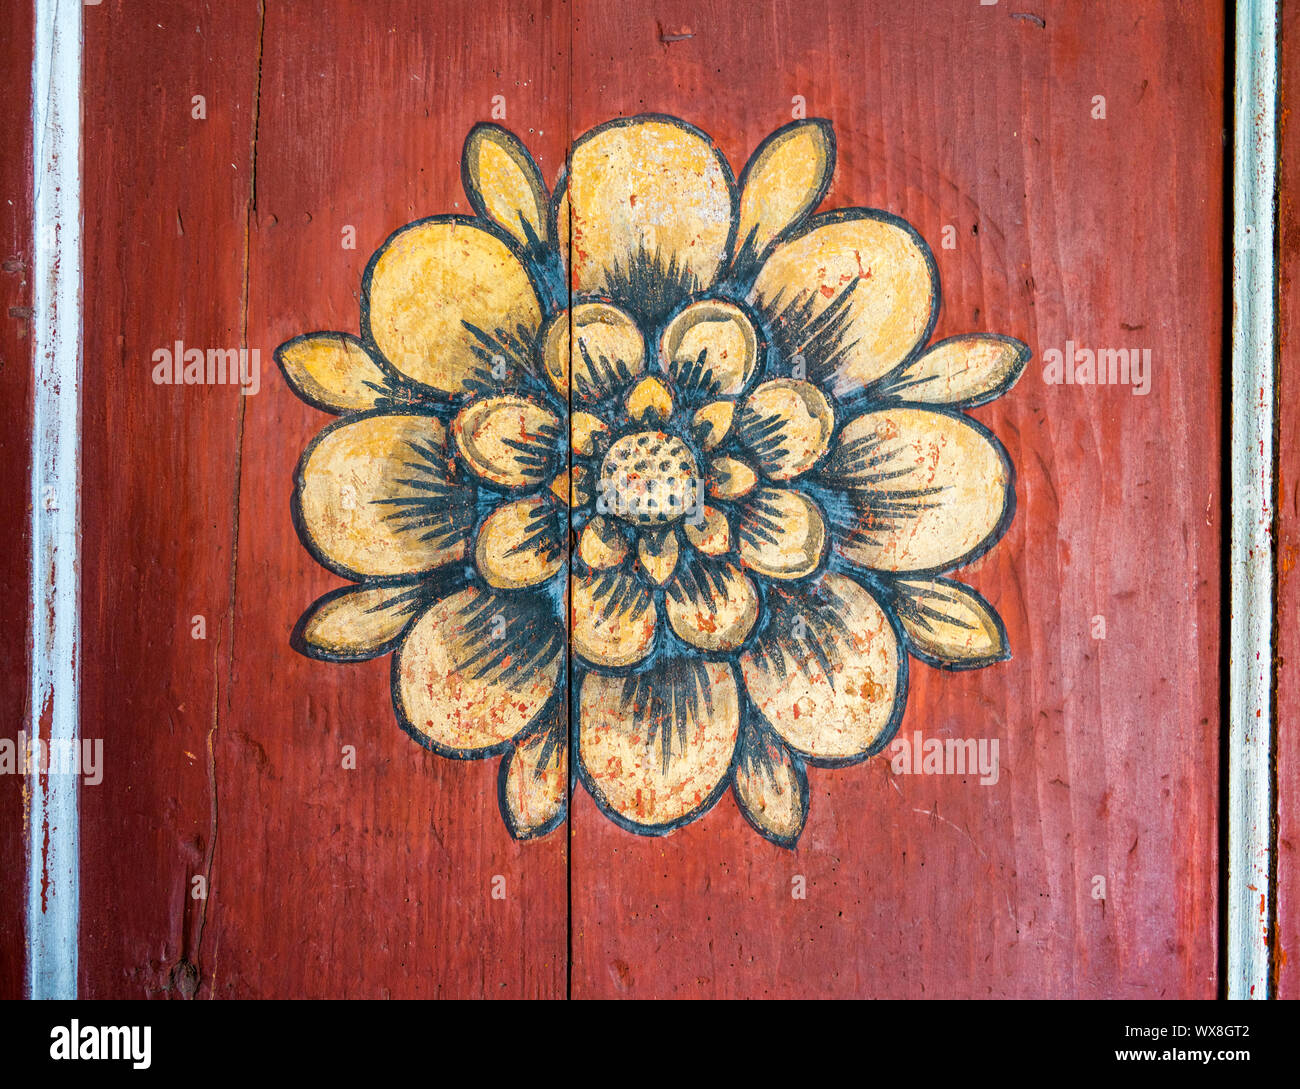 Vue rapprochée de la peinture traditionnelle sur une vieille porte en bois Banque D'Images